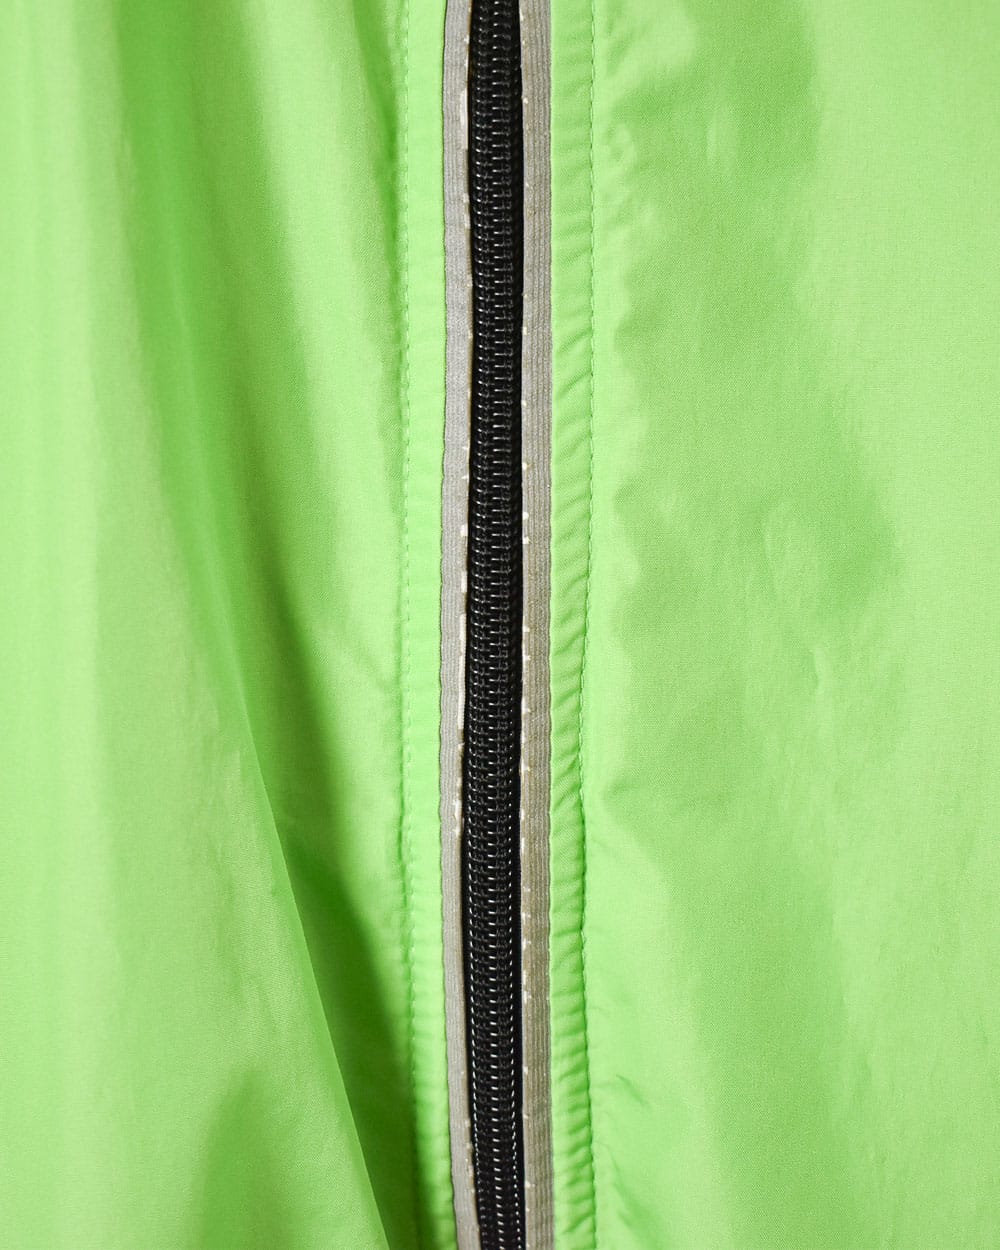 Green Nike Windbreaker Vest - Small